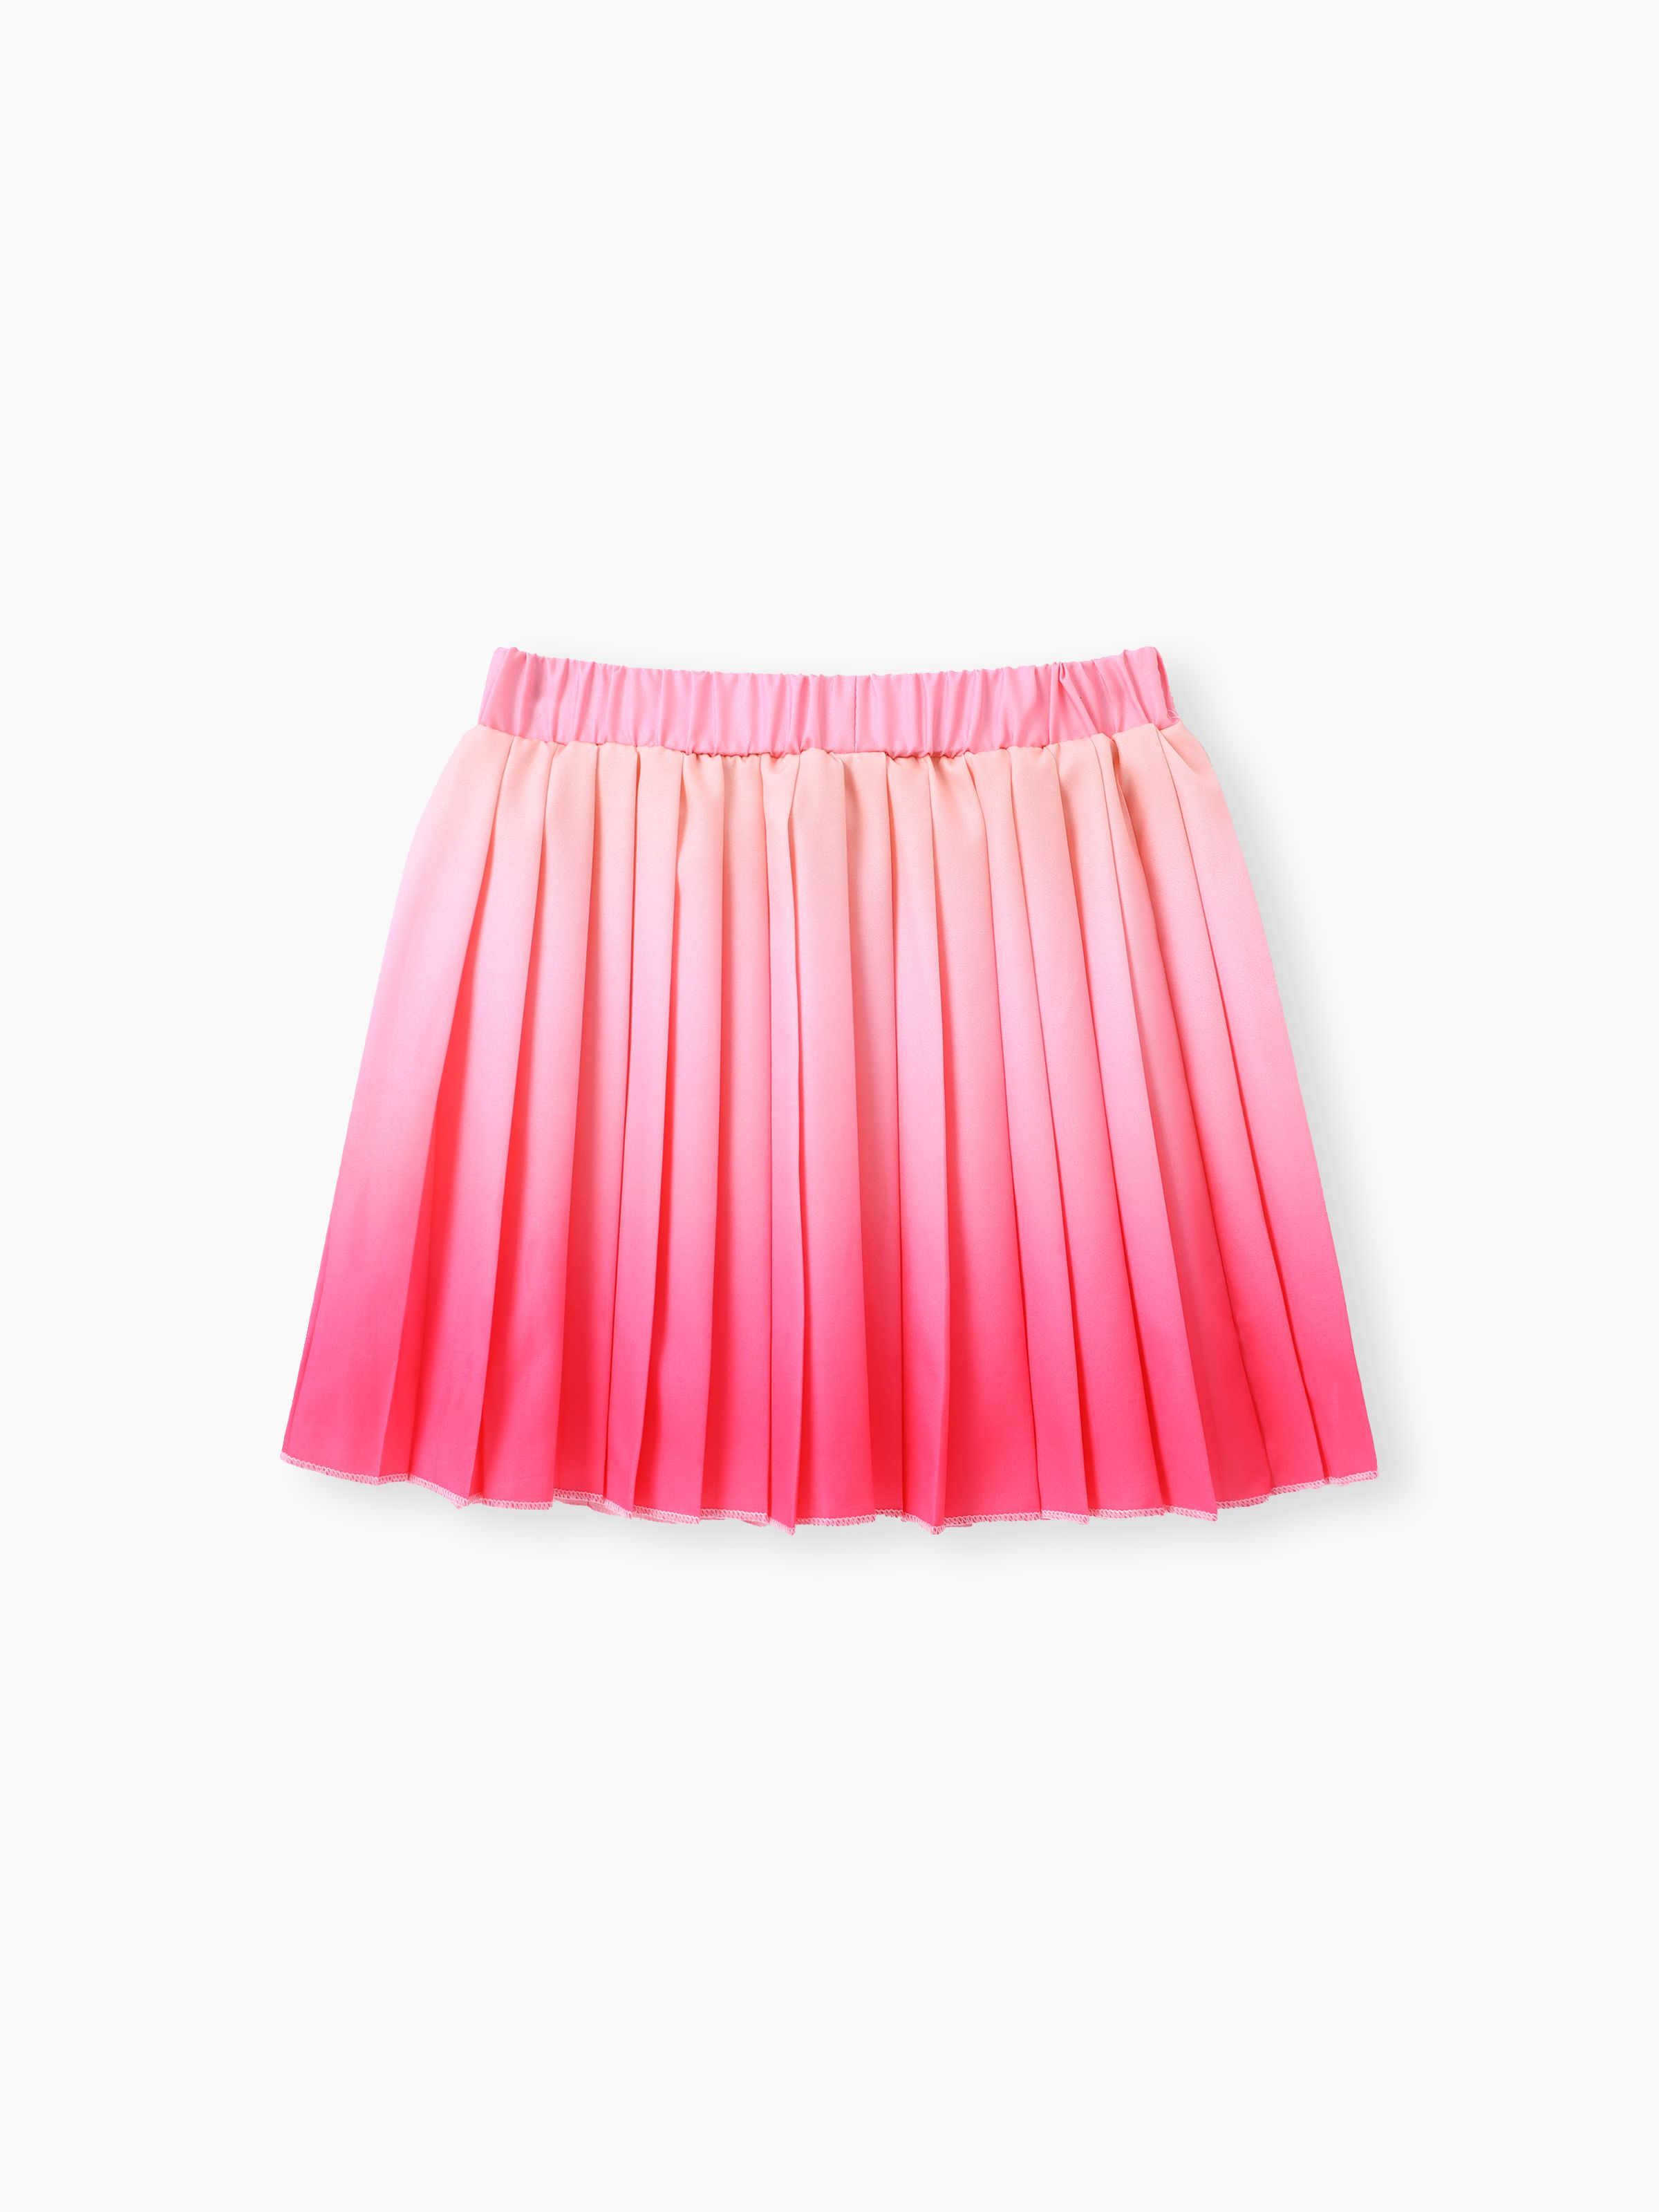 

Sweet Gradual Change Oversized Skirt for Girls - Polyester, 1pc Set